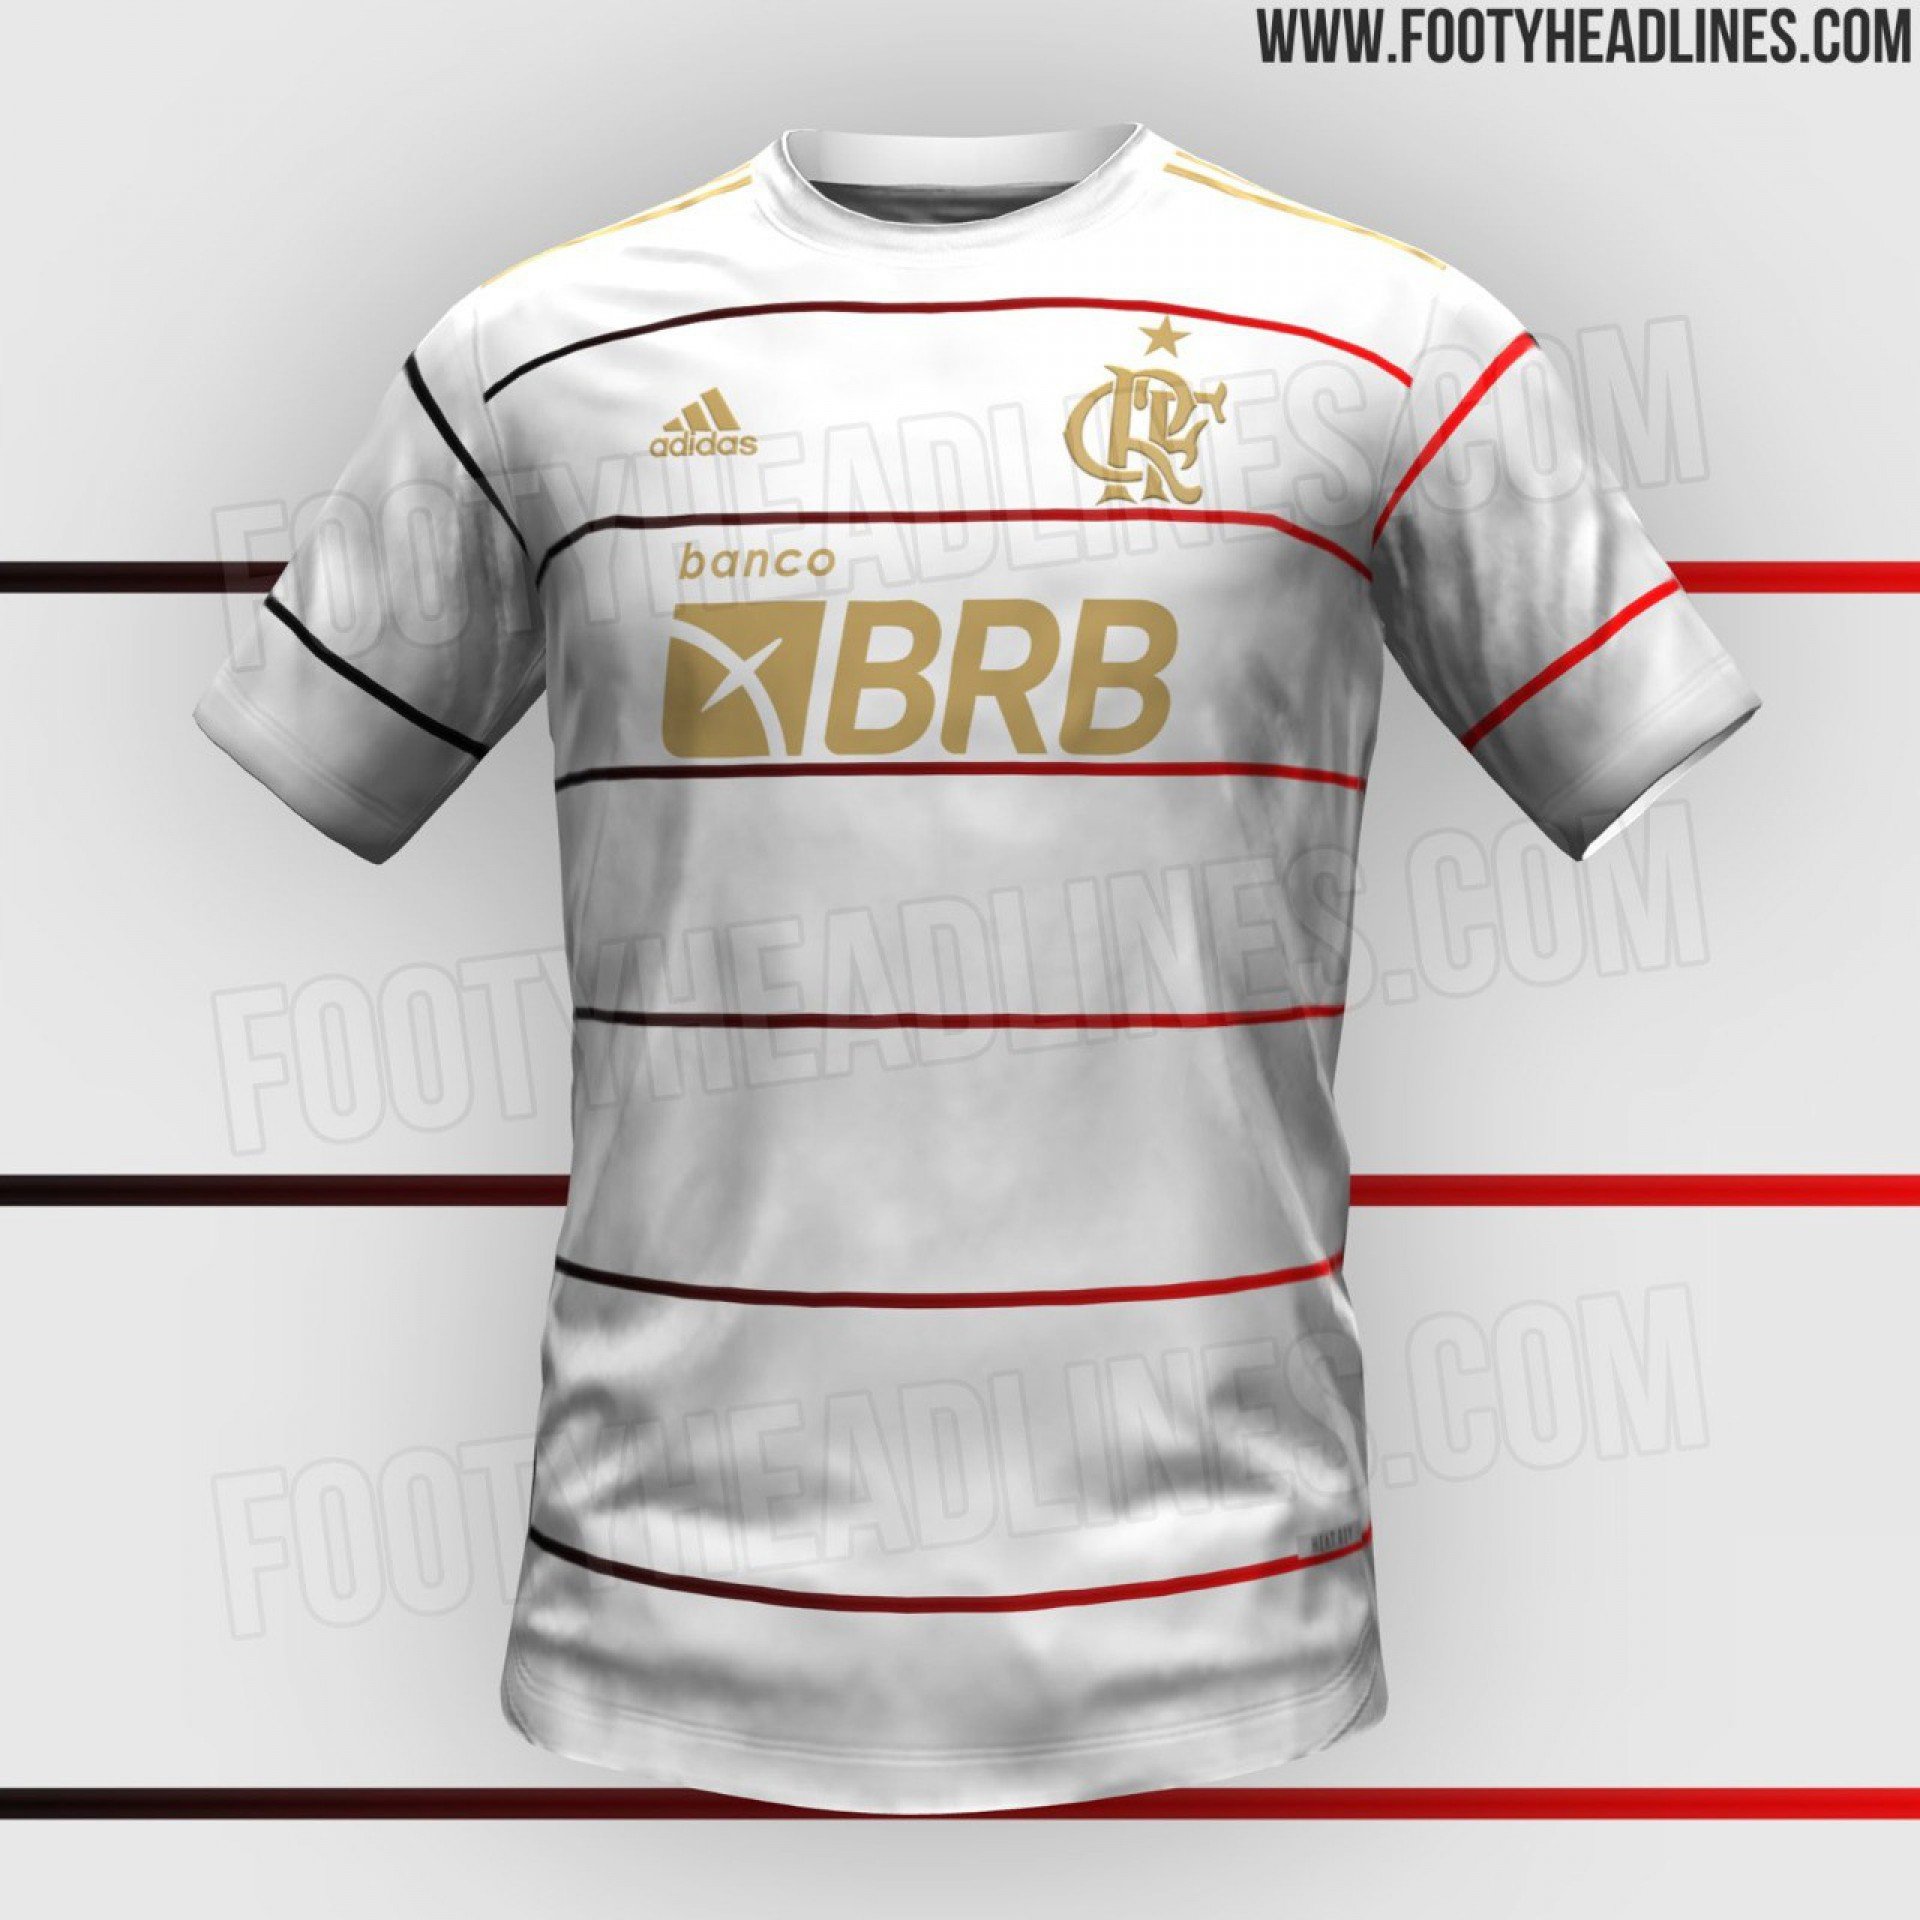 Camisa branca do Flamengo para 2023 - Reprodução/Footheadlines